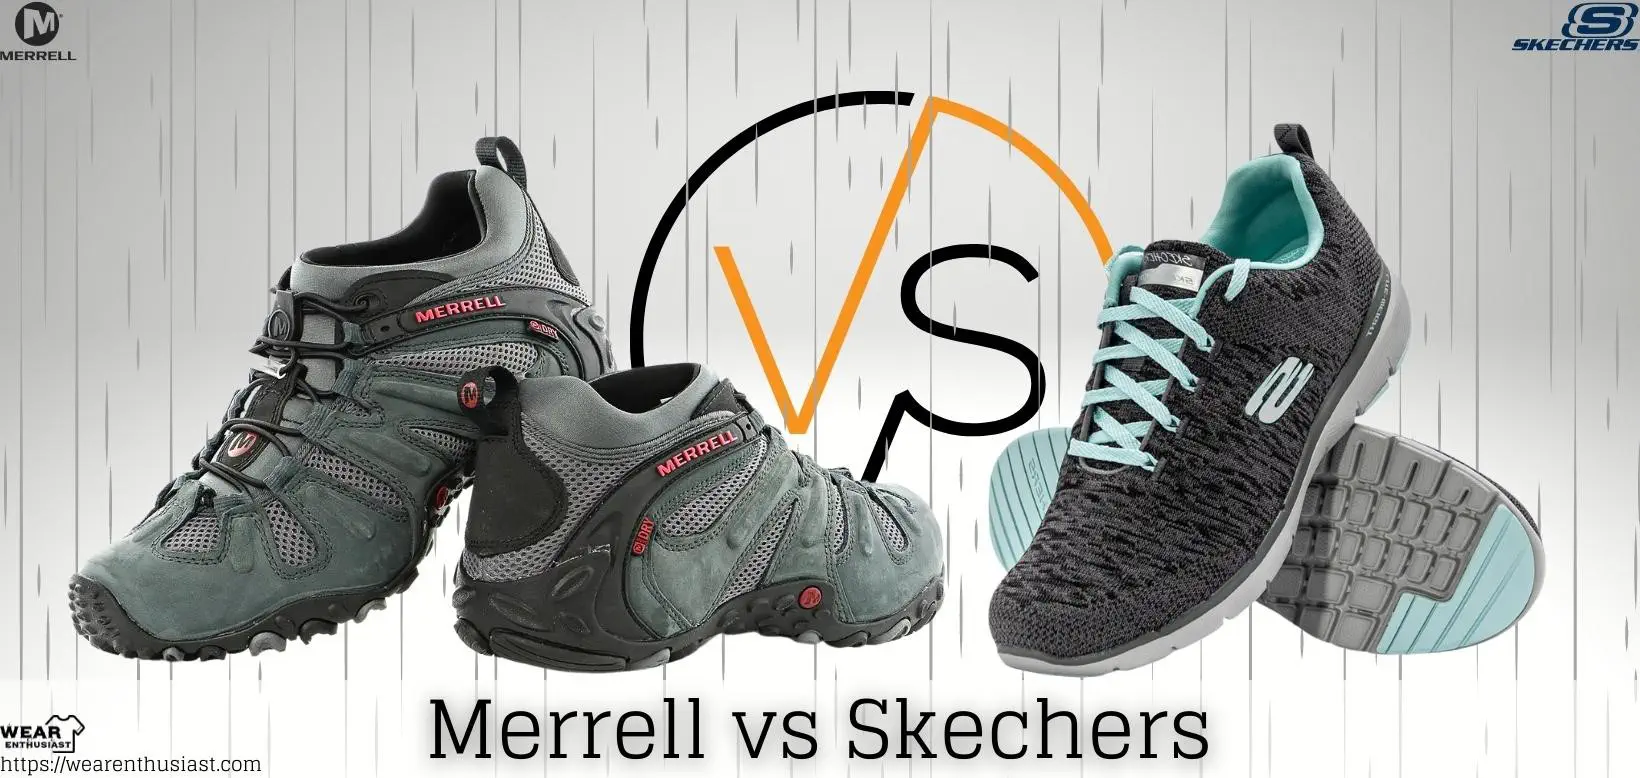 Merrell vs Skechers